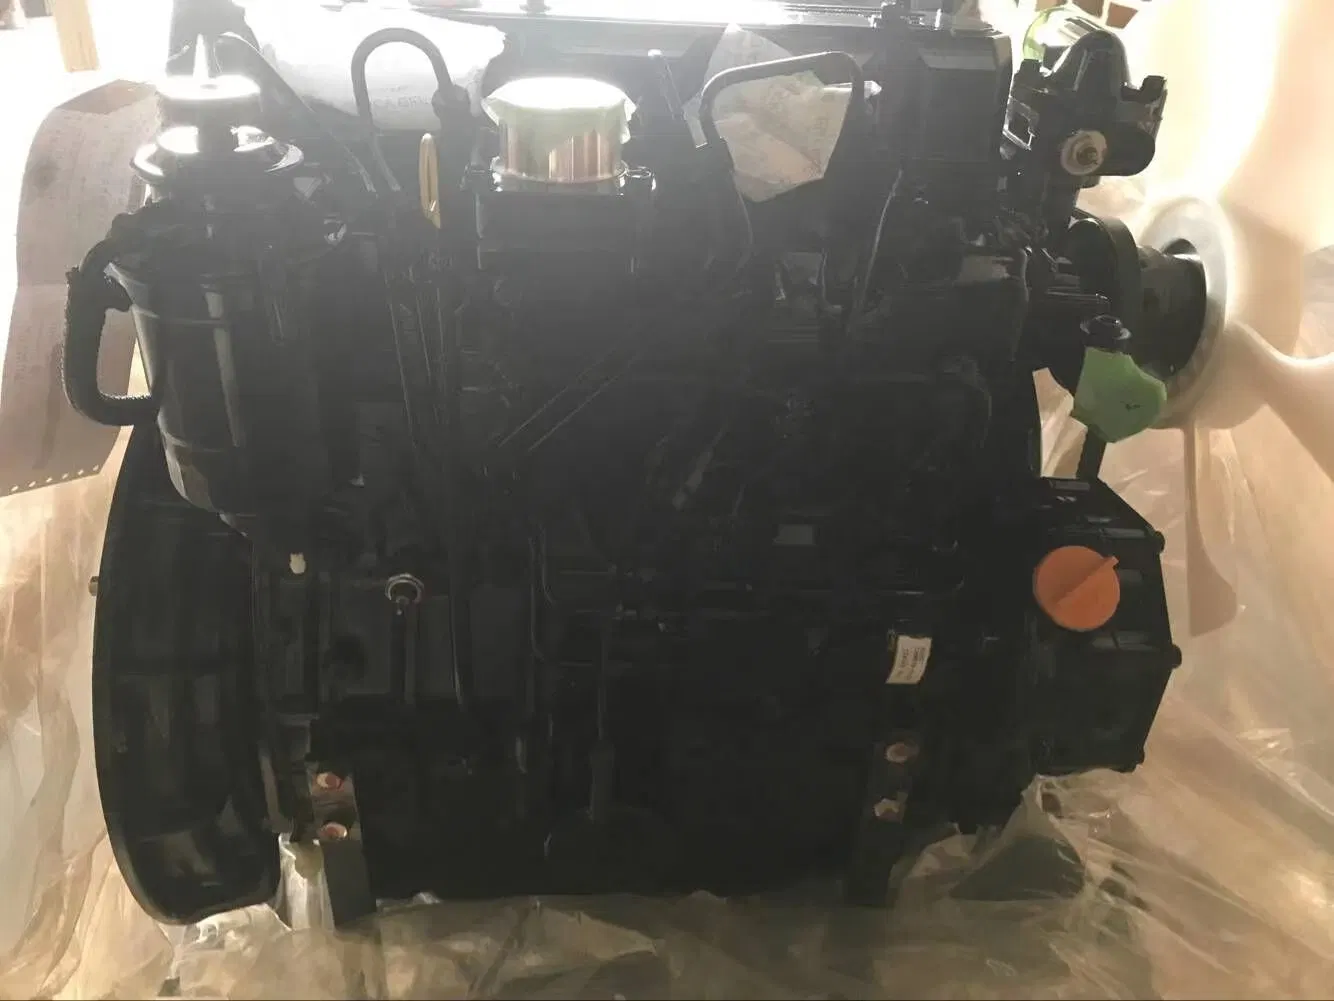 Yanmar Dieselmotoren 2tnv98 werden in Marine Engines Mini verwendet Bagger Autoteile